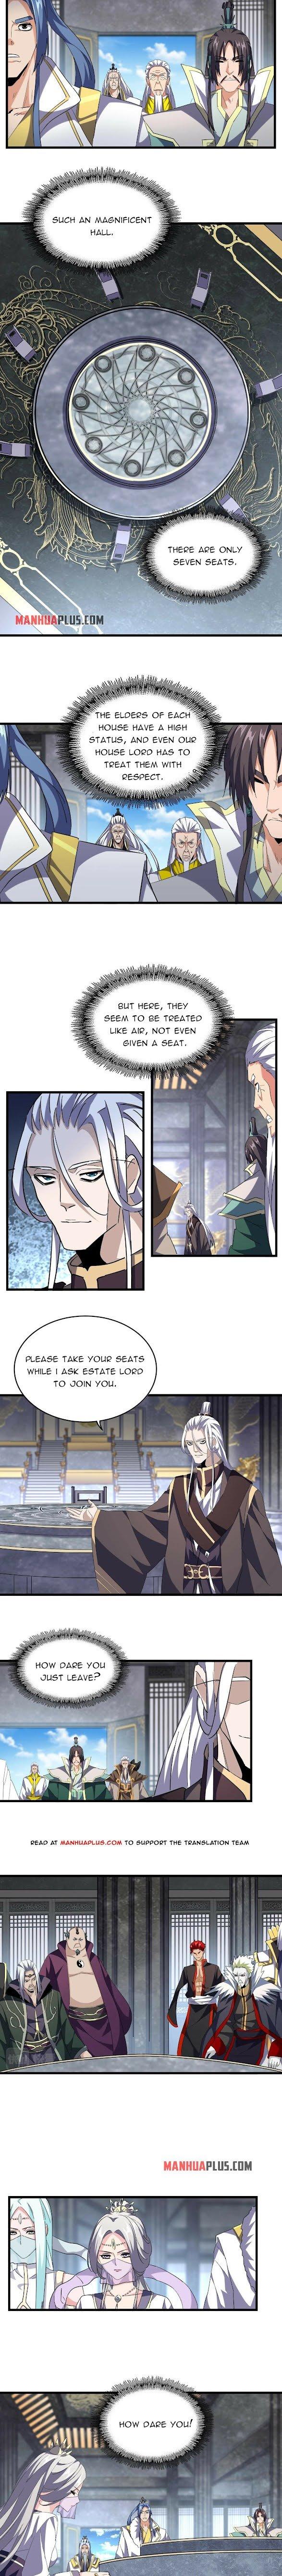 Magic Emperor Chapter 218 page 7 - Mangakakalot